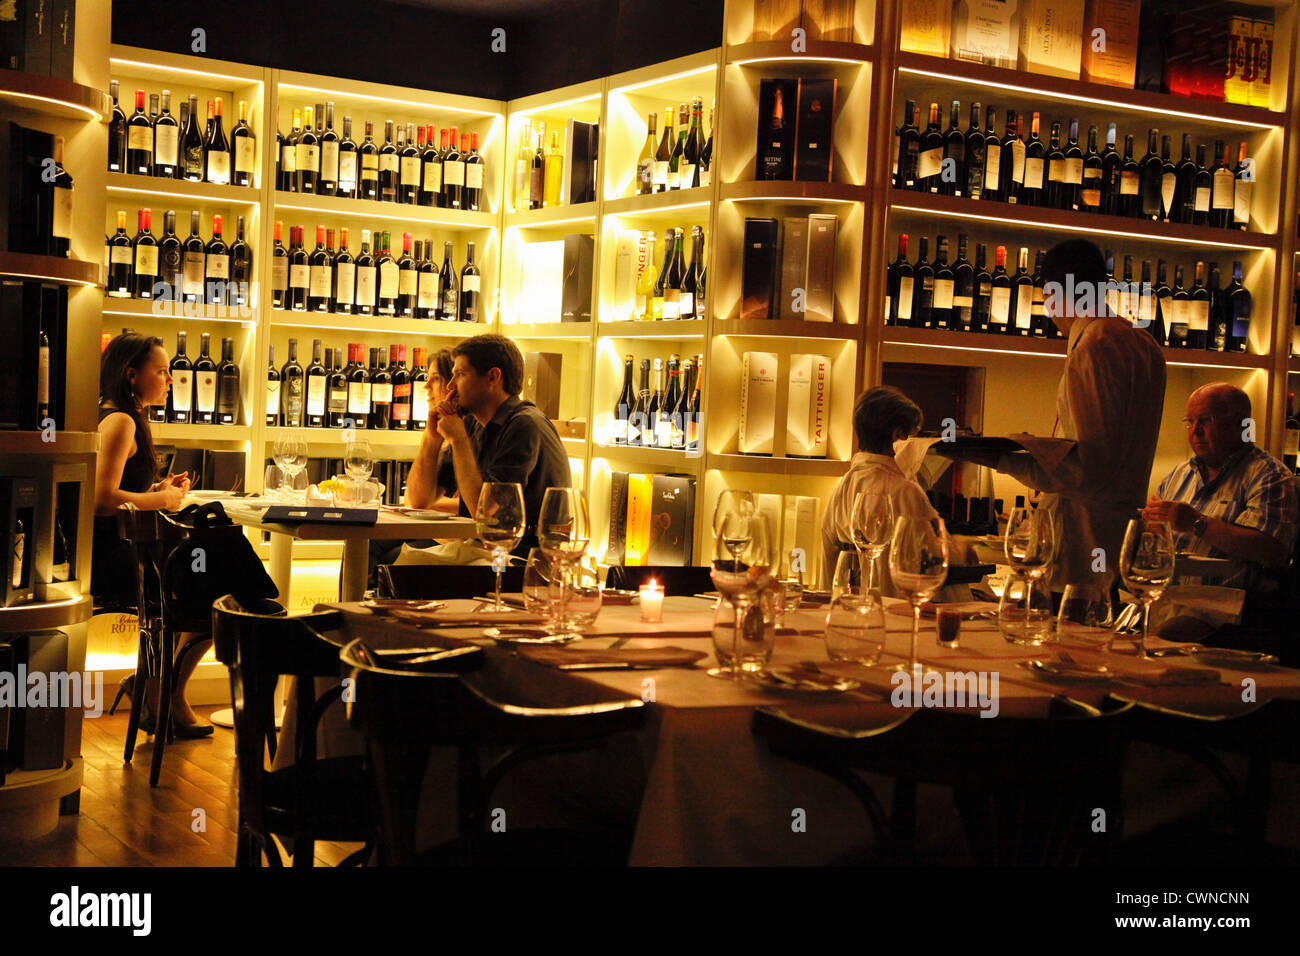 Aldos Vinoteca Bar und Restaurant, San Telmo, Buenos Aires, Argentinien. Stockfoto